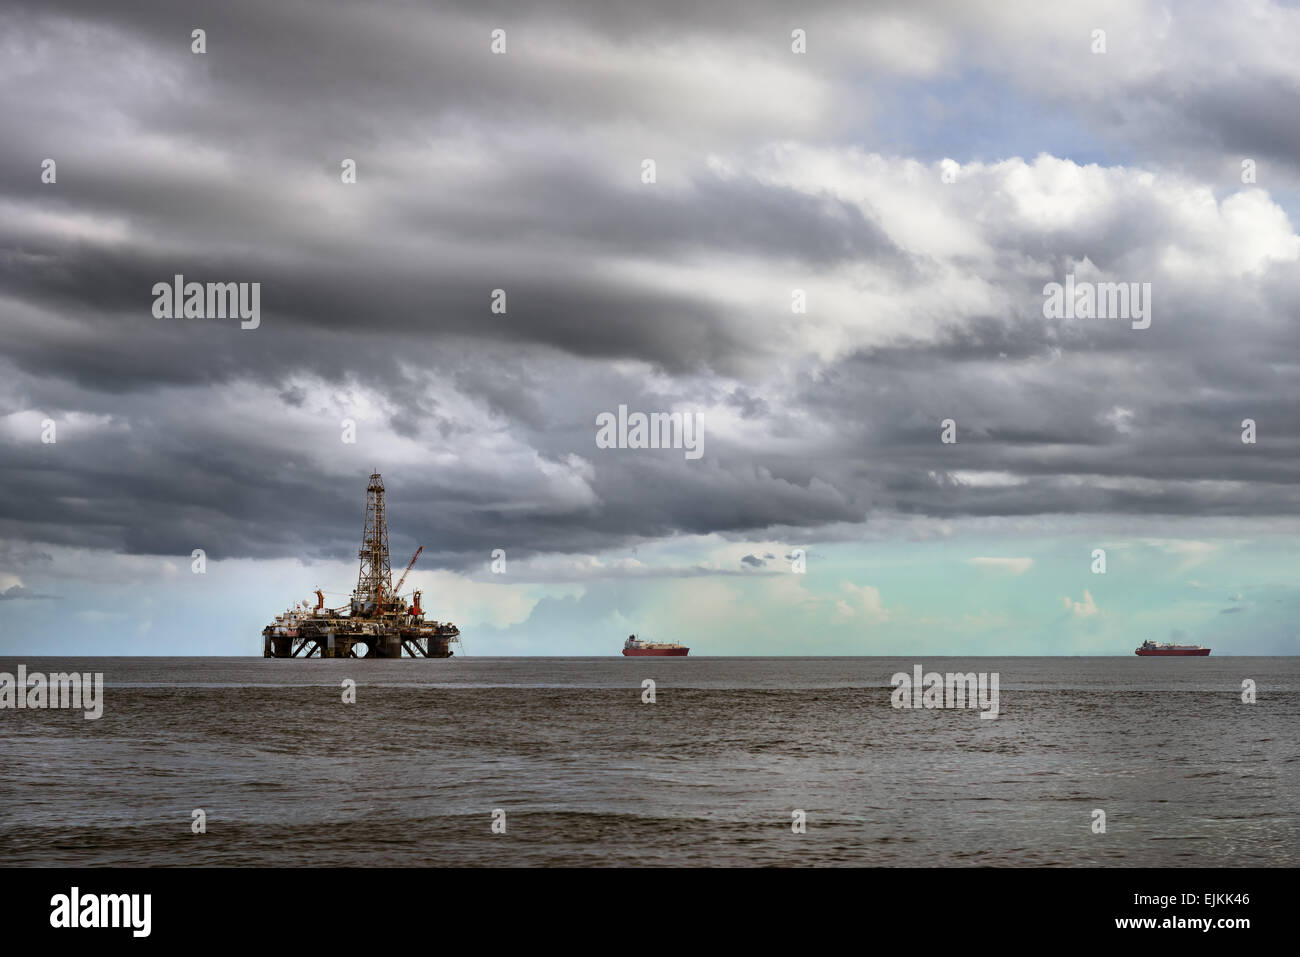 La plate-forme de forage en mer de l'industrie pétrolière Banque D'Images